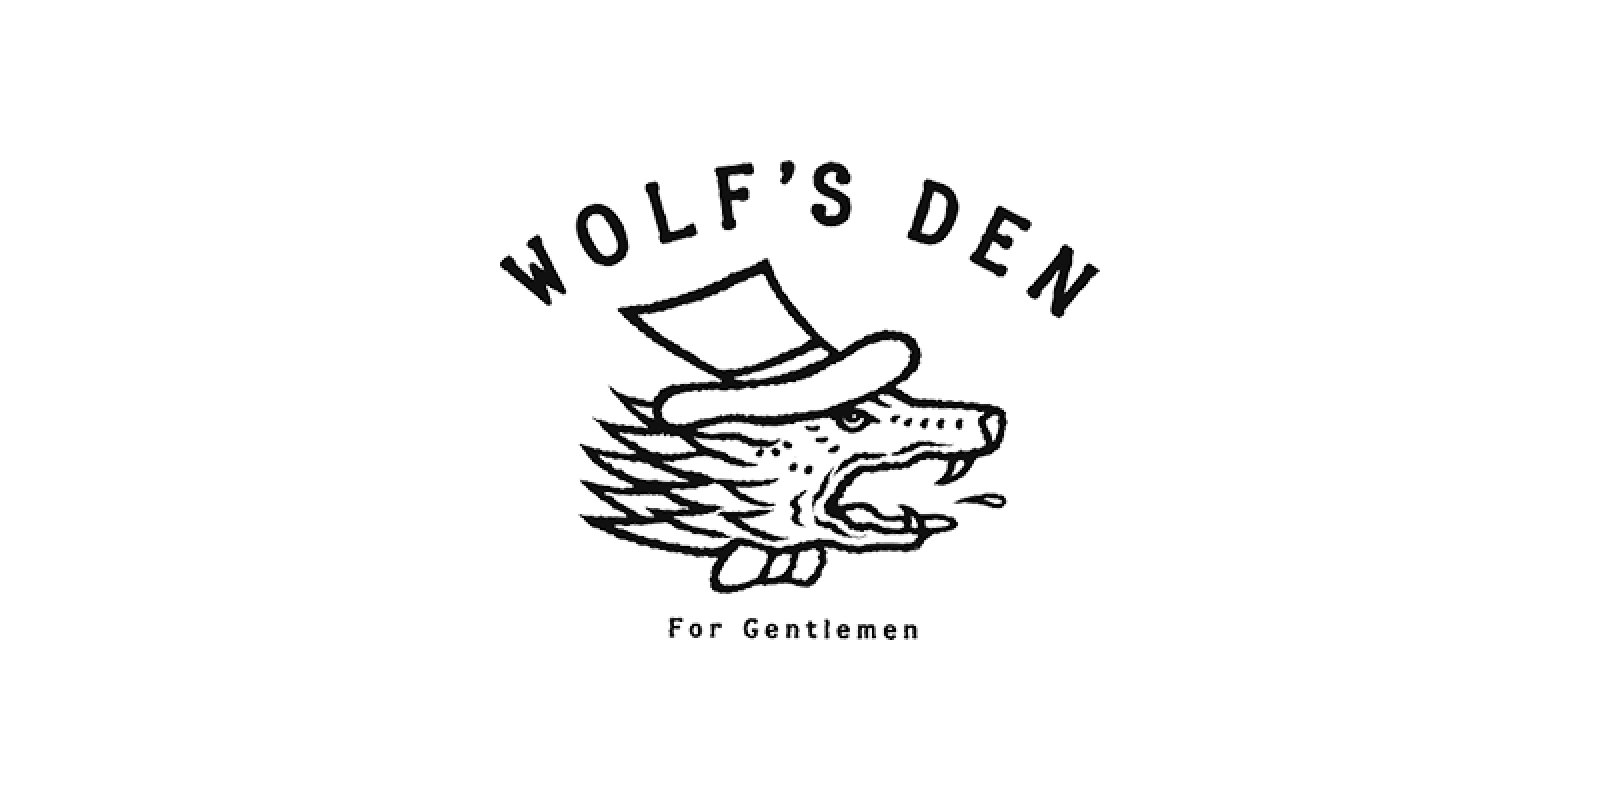 WOLF'S DEN